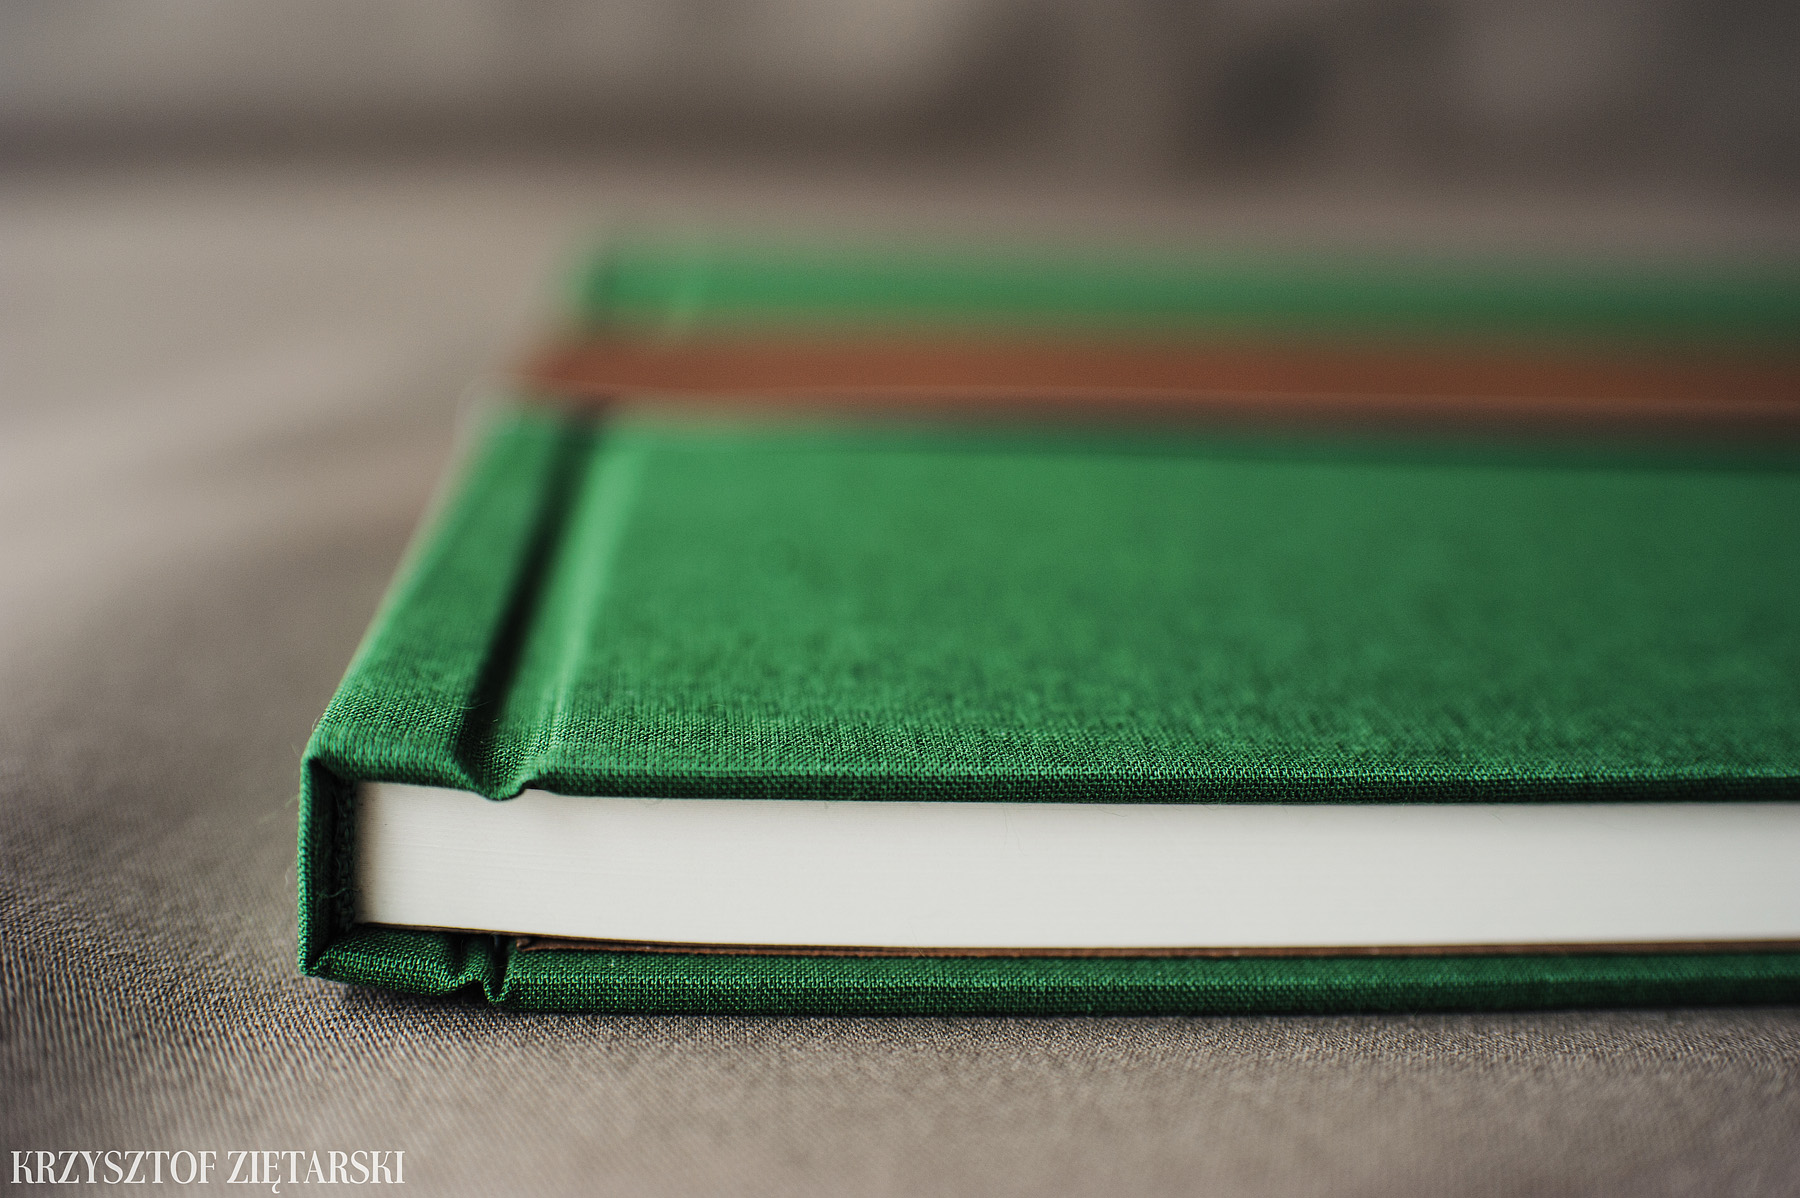 KrukBook 40x30cm, papier kremowy niepowlekany, zielone płótno C25 i tabakowa wyklejka - zdjęcia, przykłady